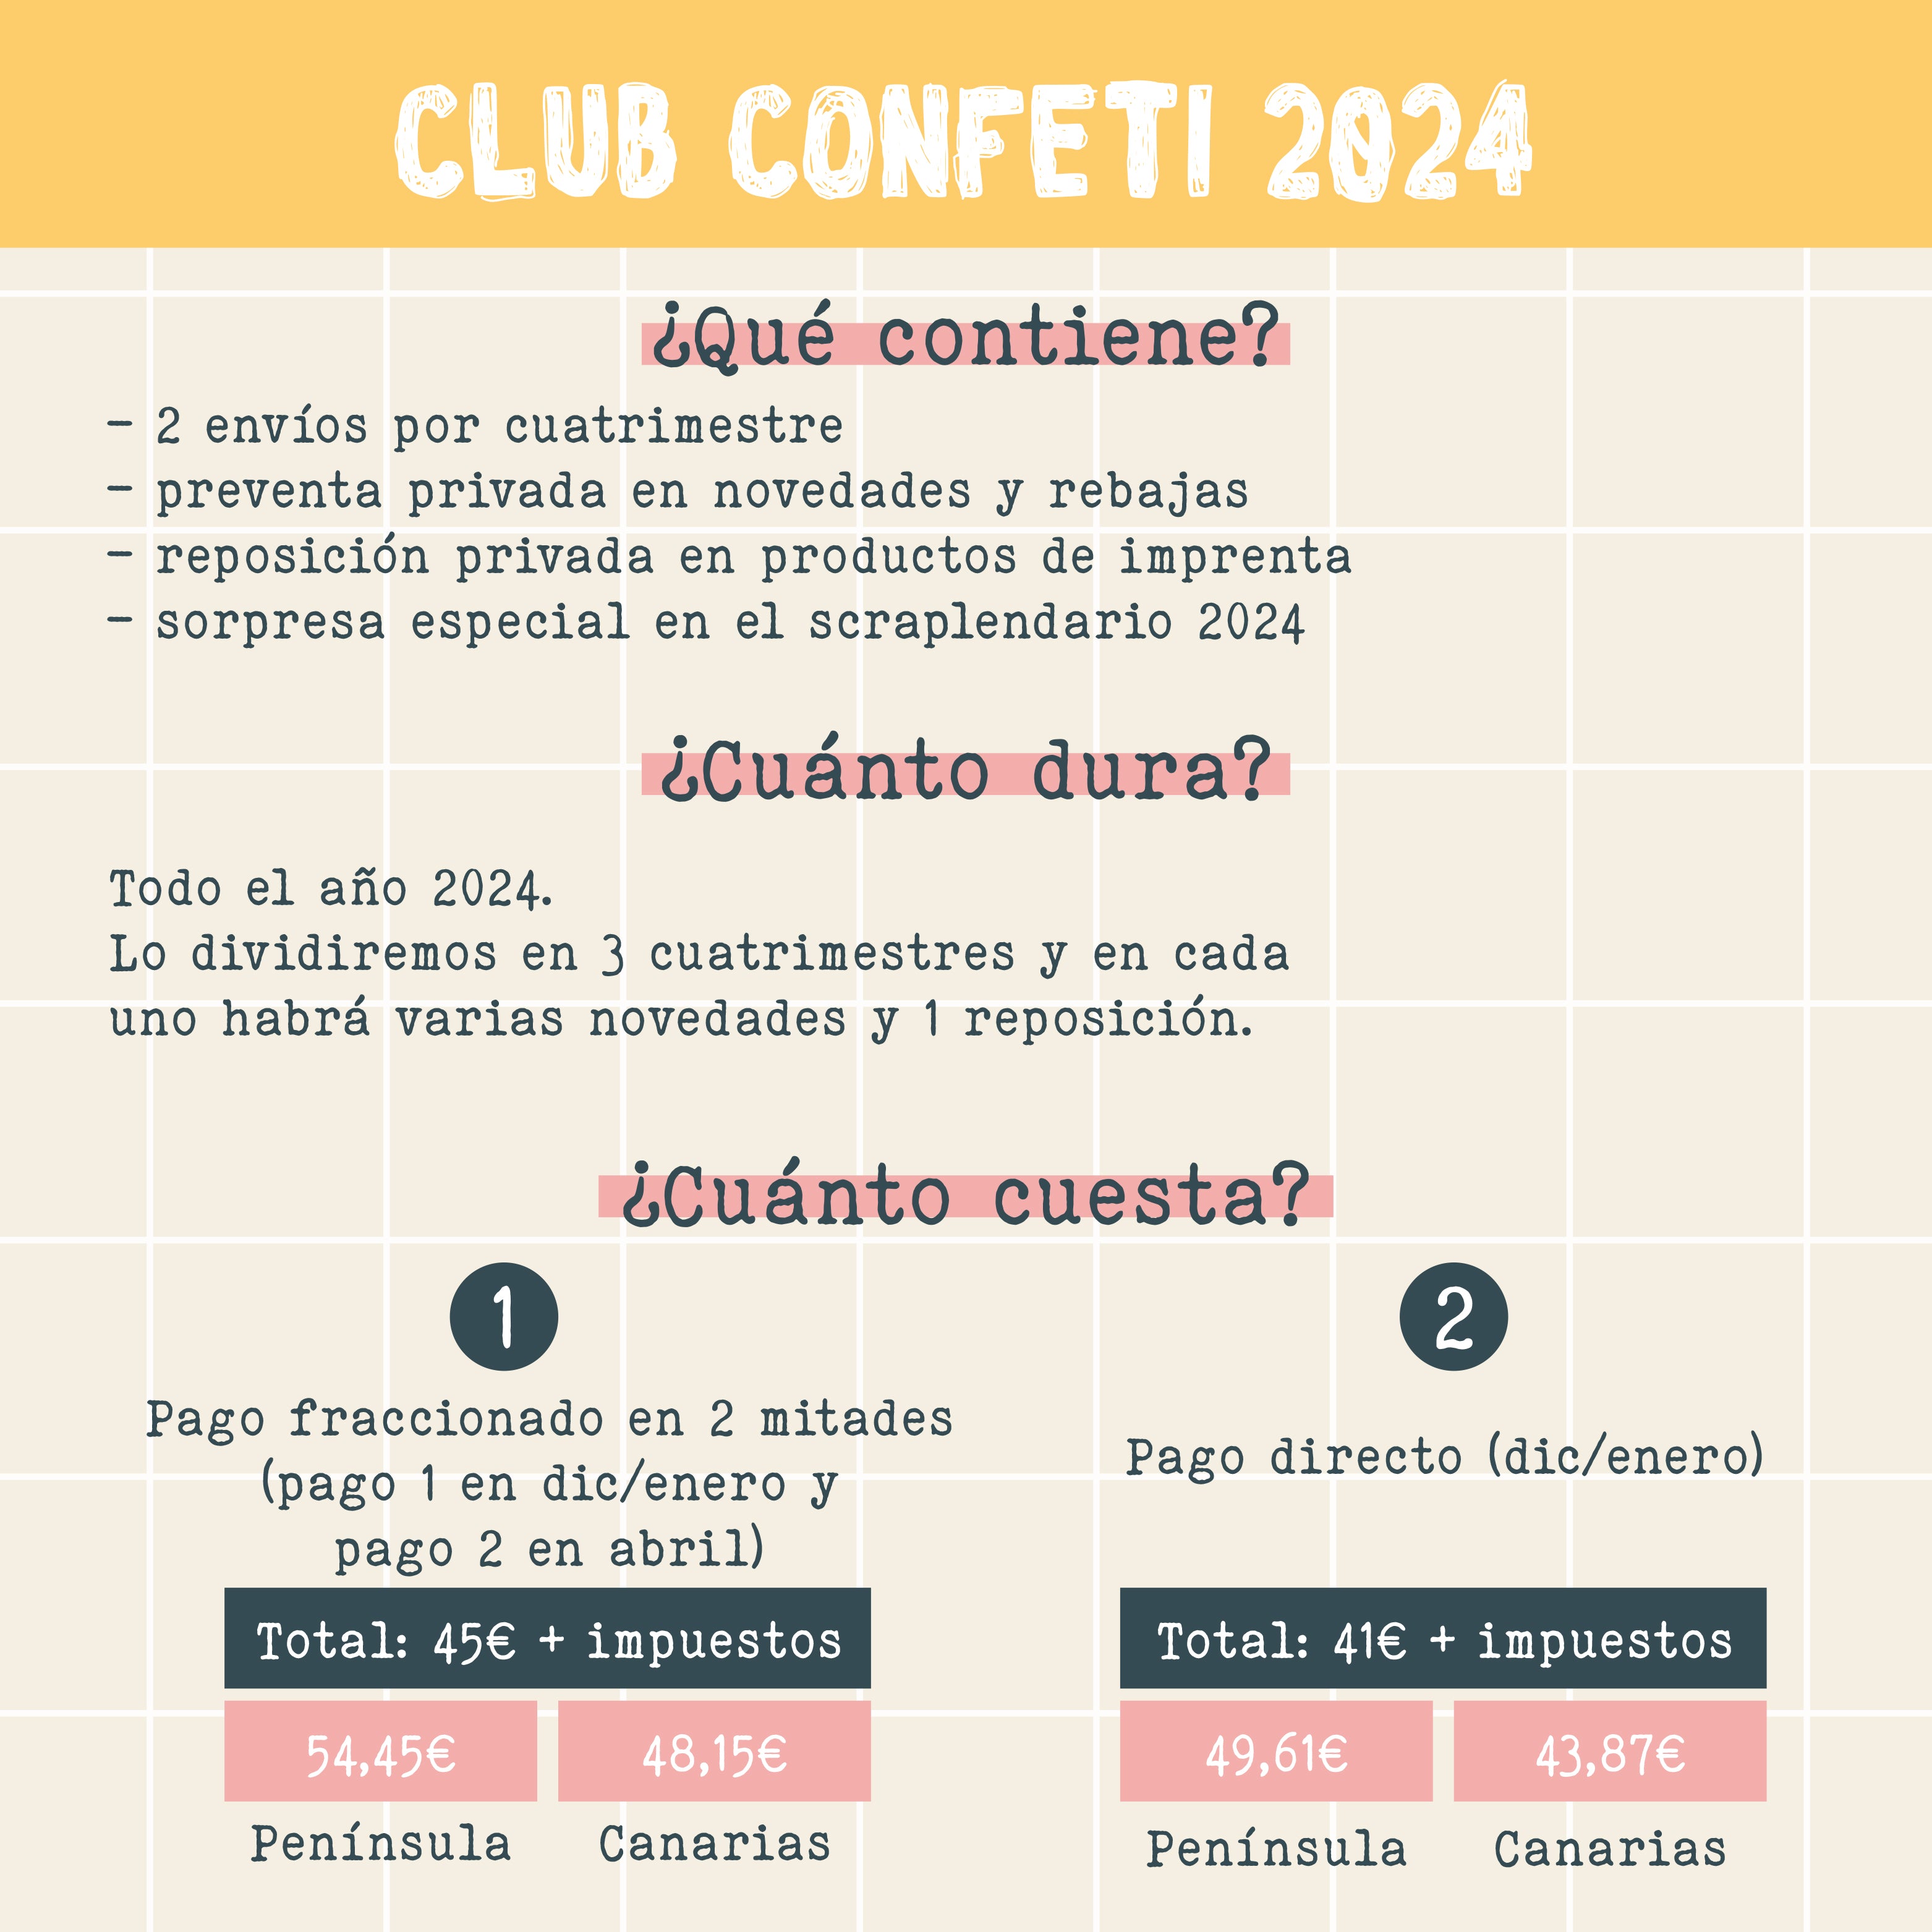 CLUB CONFETI 2024 PAGO 1 FRACCIONADO EN 2 MITADES - SUSCRIPCIÓN ANUAL - SCRAPBOOKING